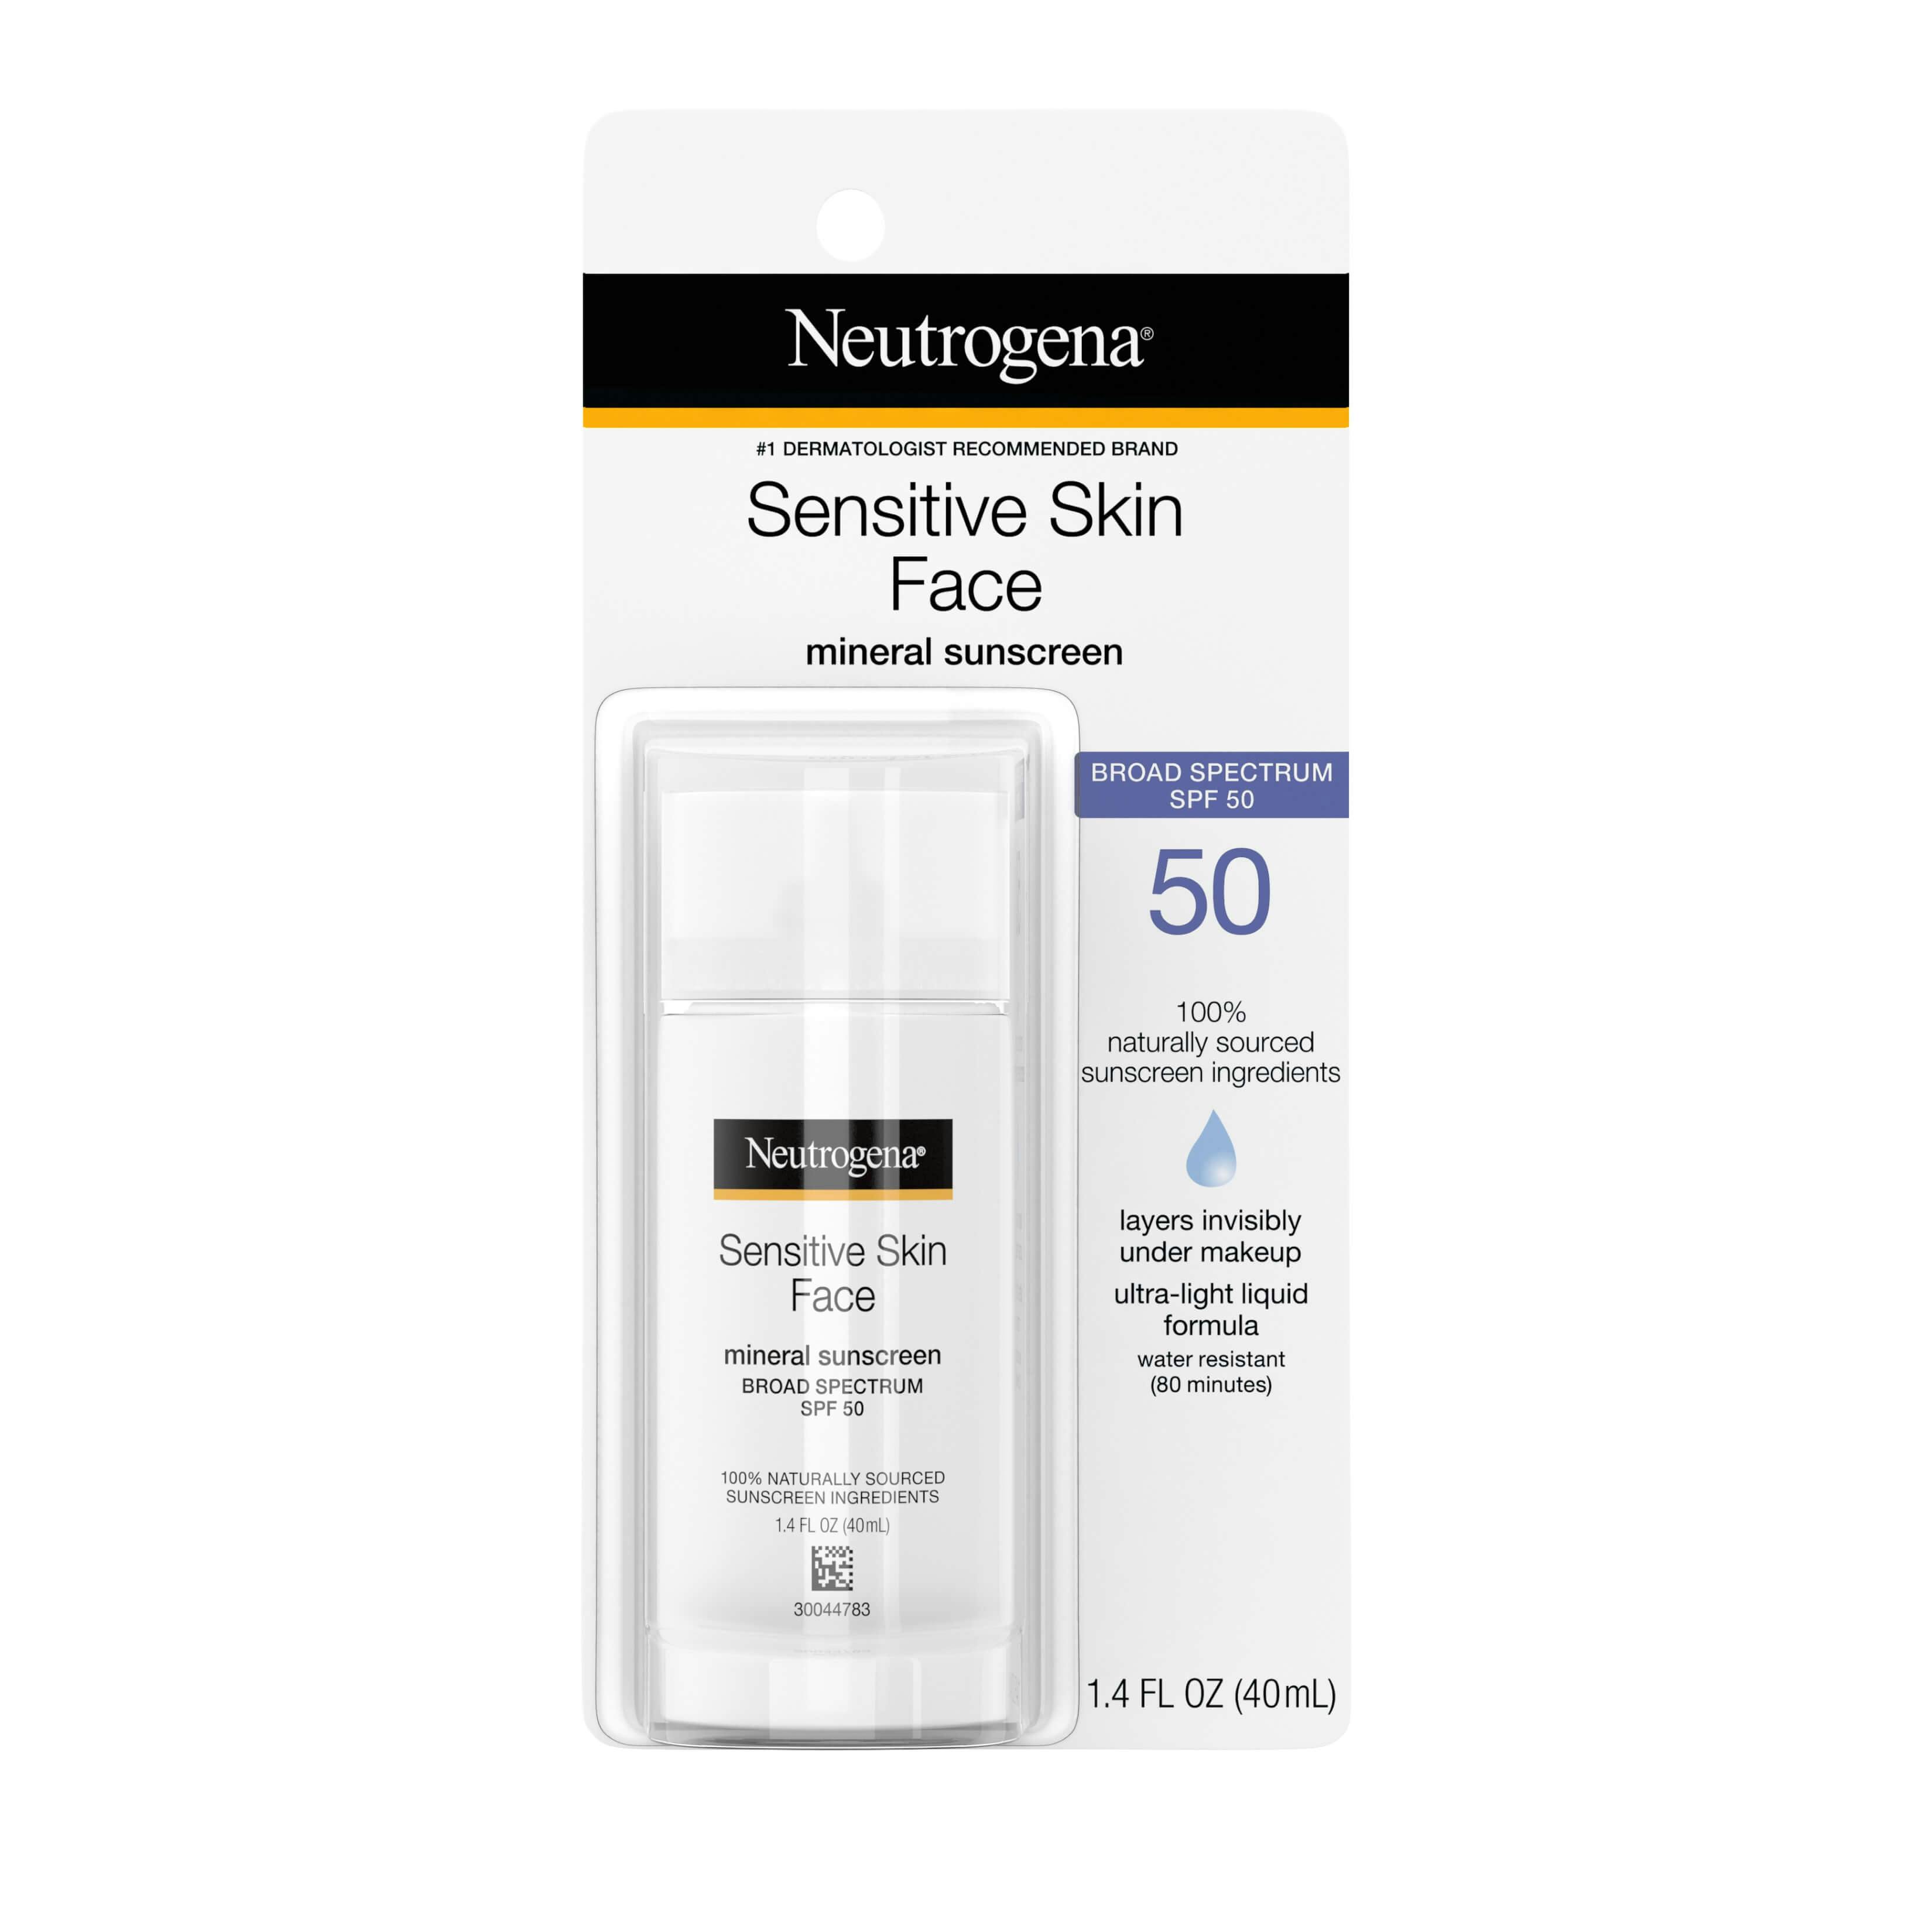 sensitive skin sunscreen neutrogena